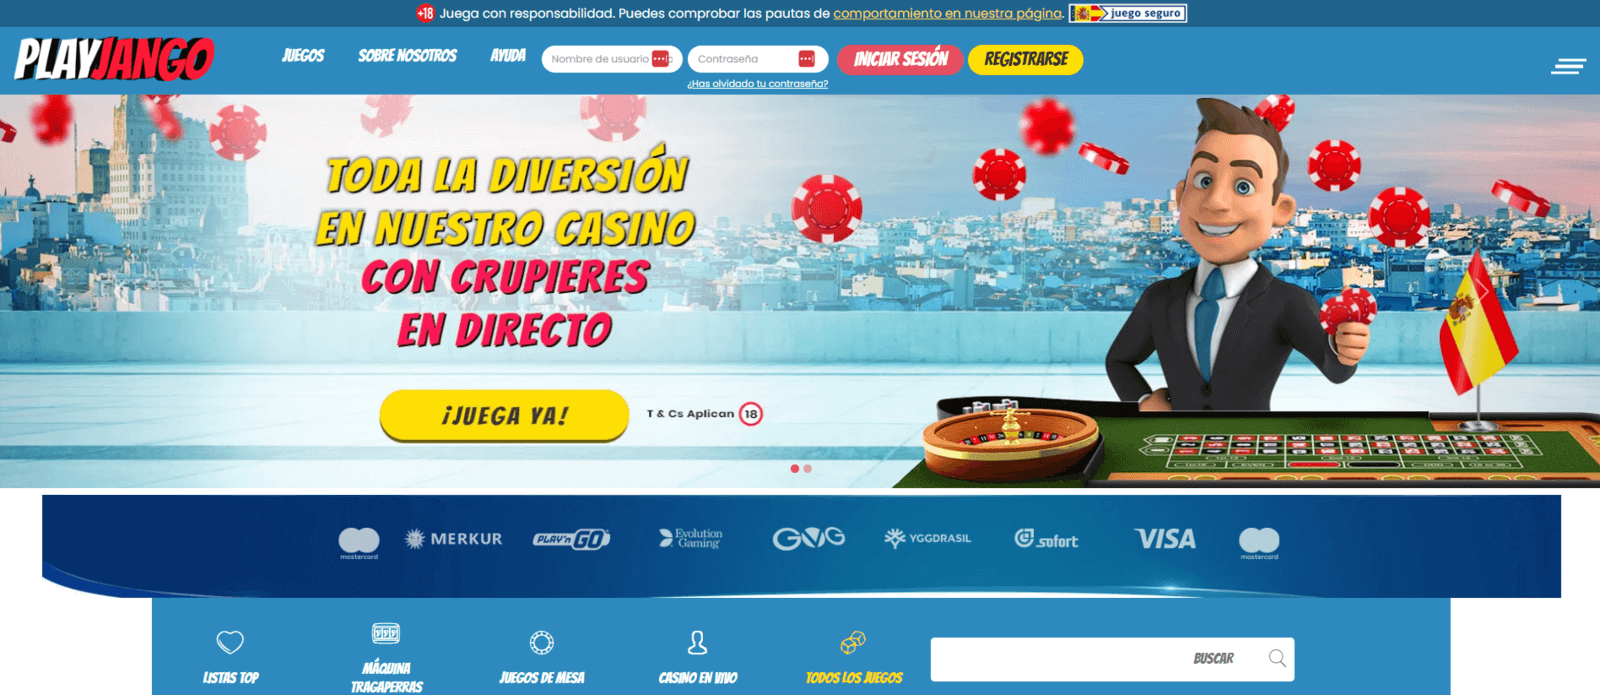 PlayJango casino online nuevo en España